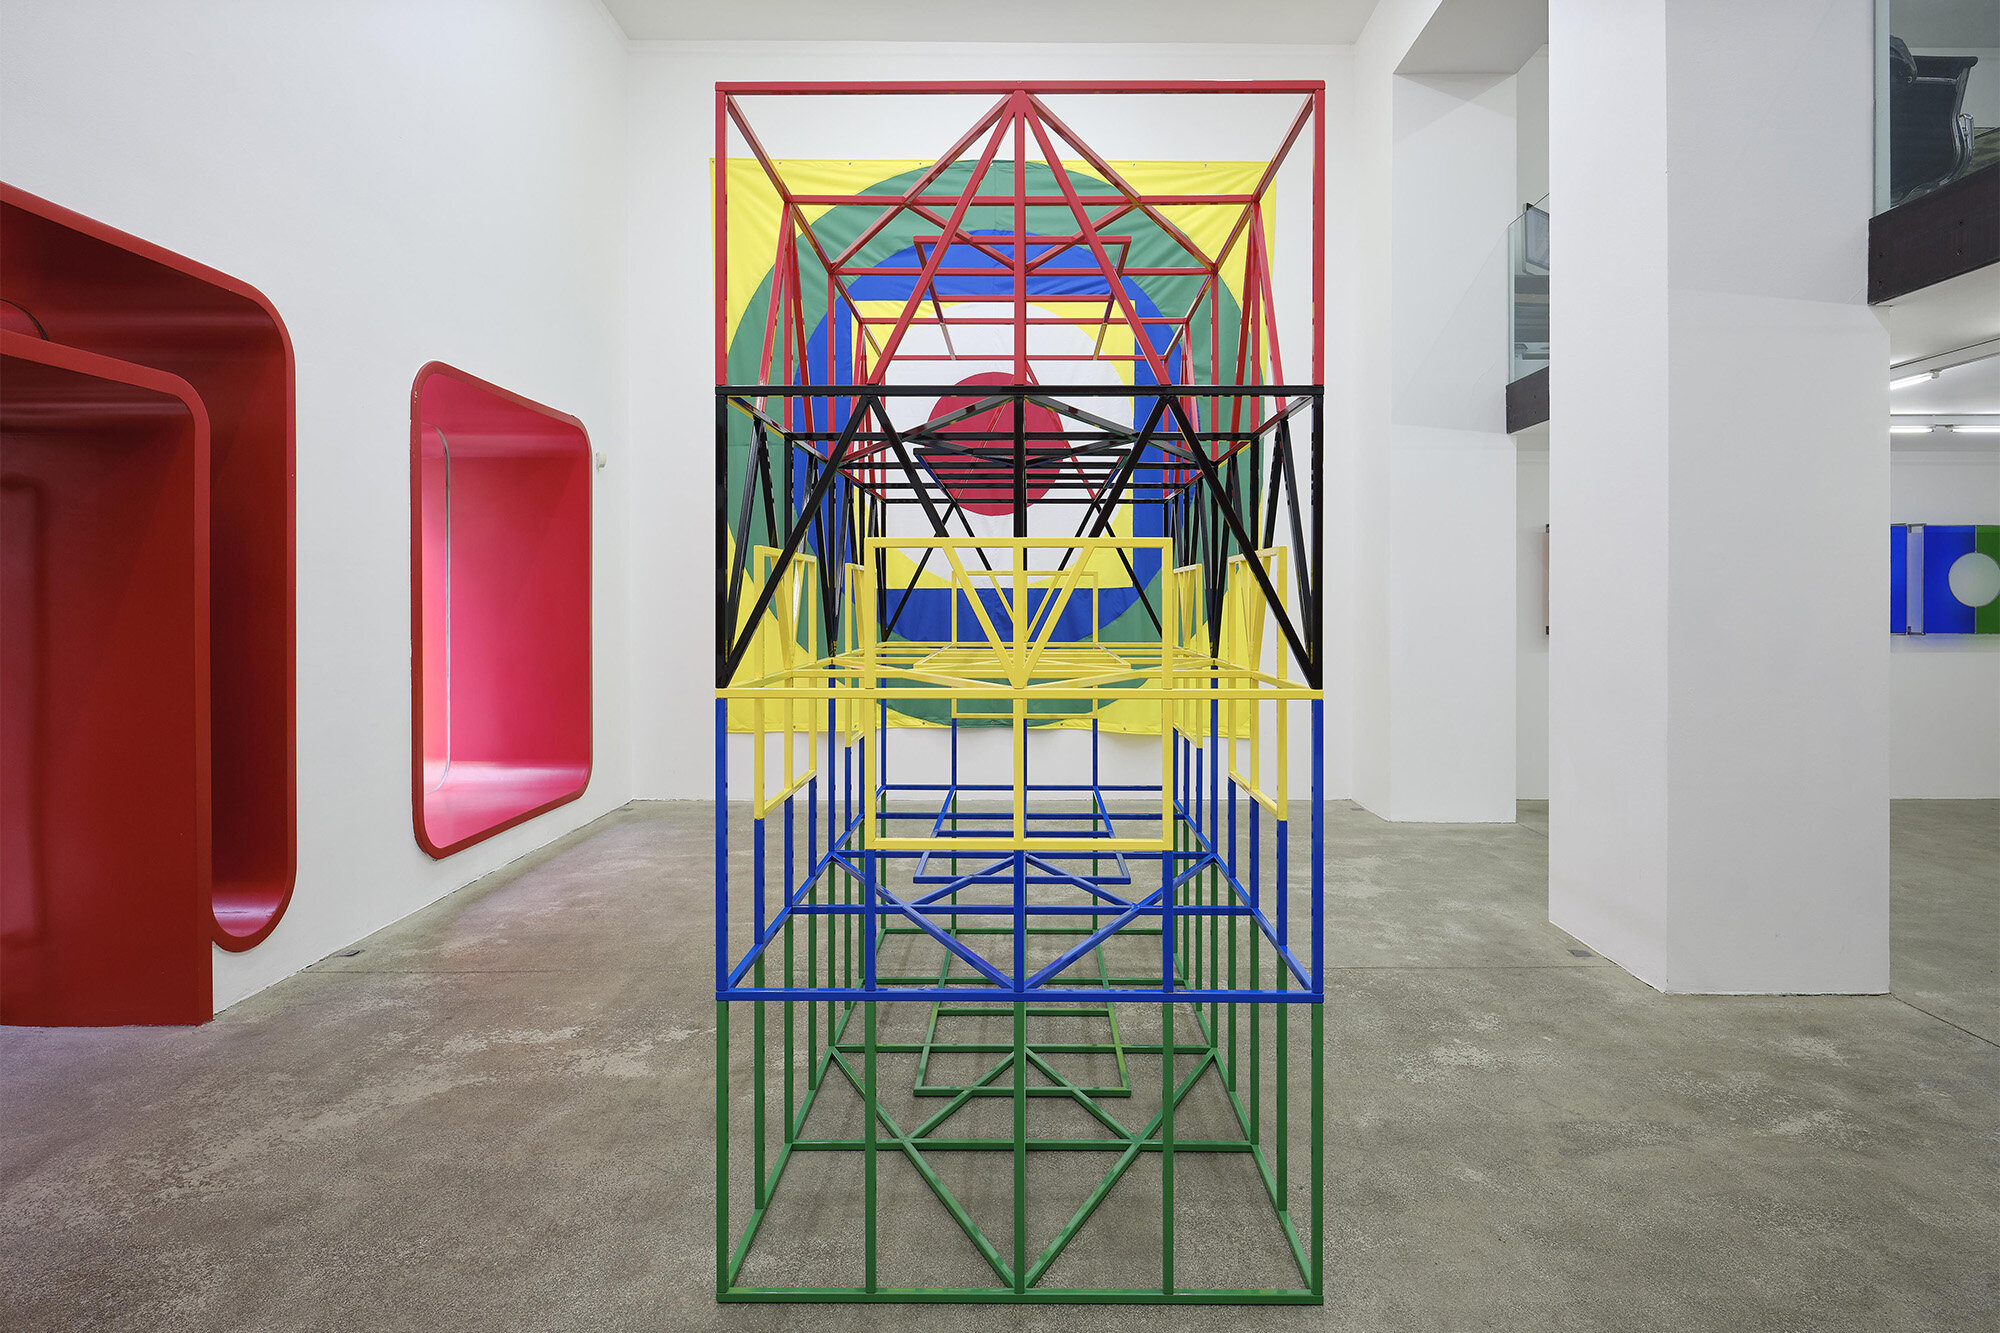 Galerie+Johann+Widauer-Exhibition-2020-Matt-Mullican-01.jpg